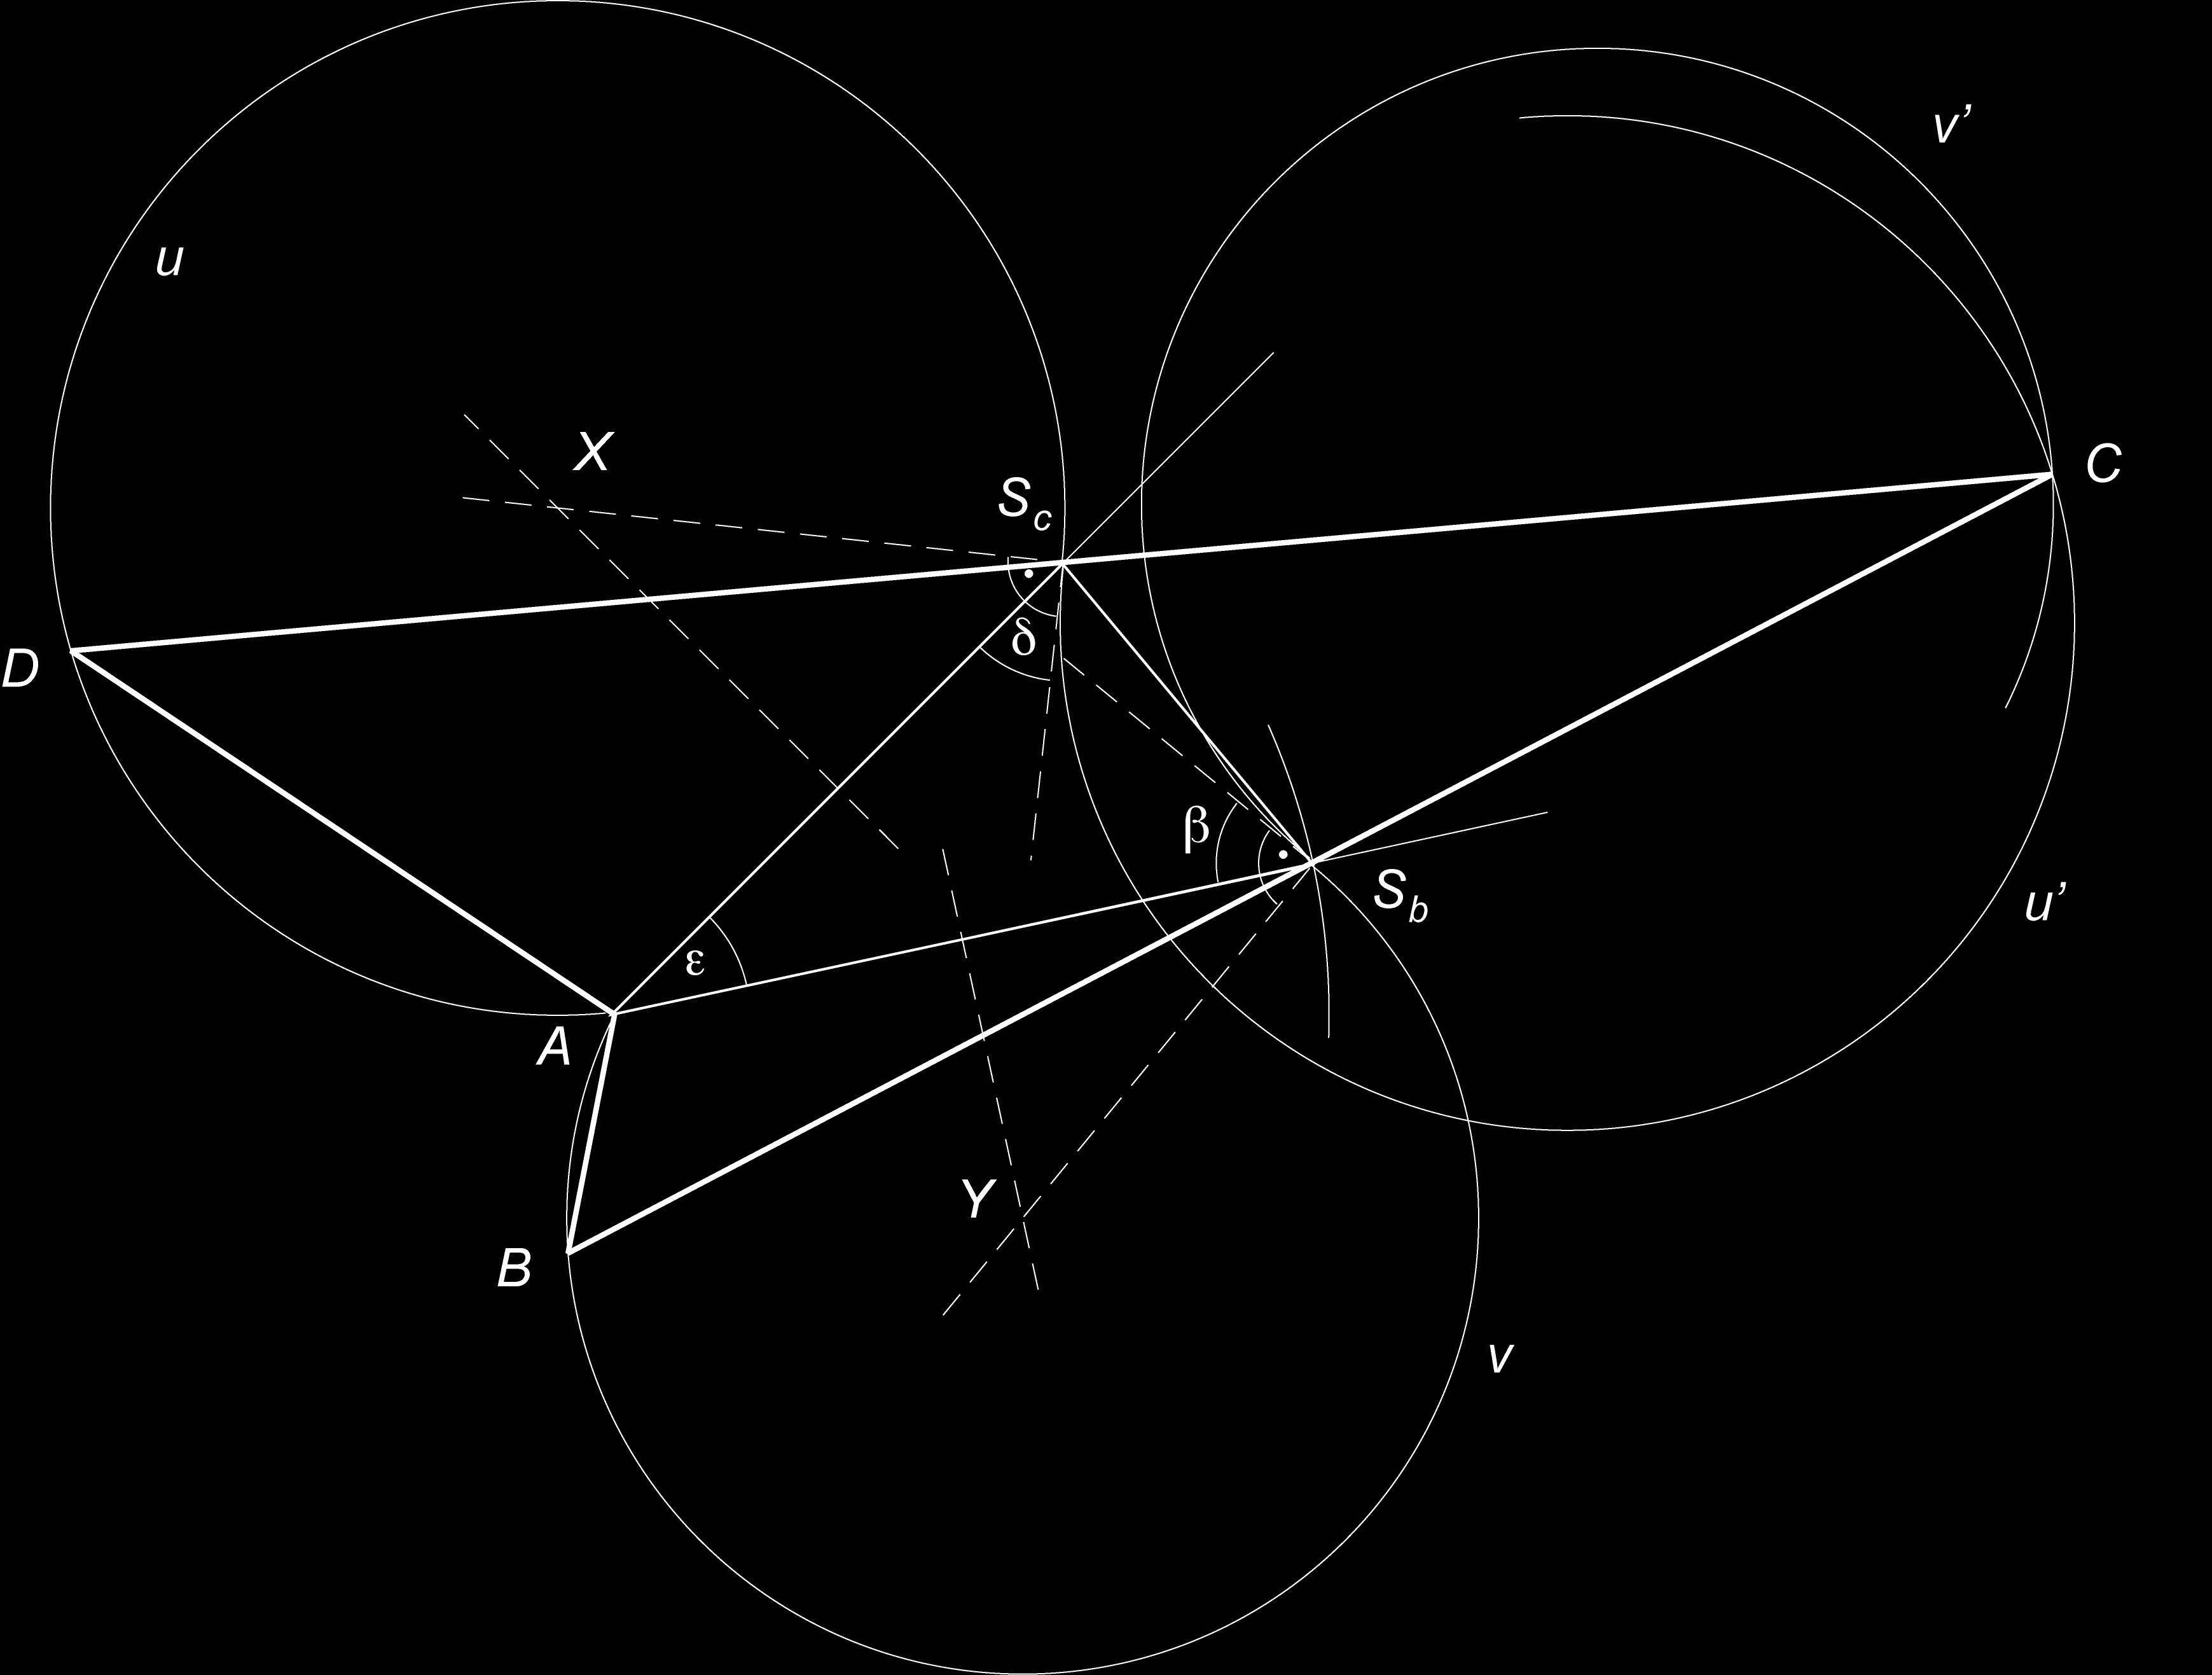 Příklad 9. Sestrojte čtyřúhelník ABCD, je-li dáno AS b (S b je střed BC), AS c (S c je střed CD), β, δ a velikost úhlu ɛ = <) S b AS c. Řešení. Nejdříve sestrojíme trojúhelník S b AS c podle věty sus.